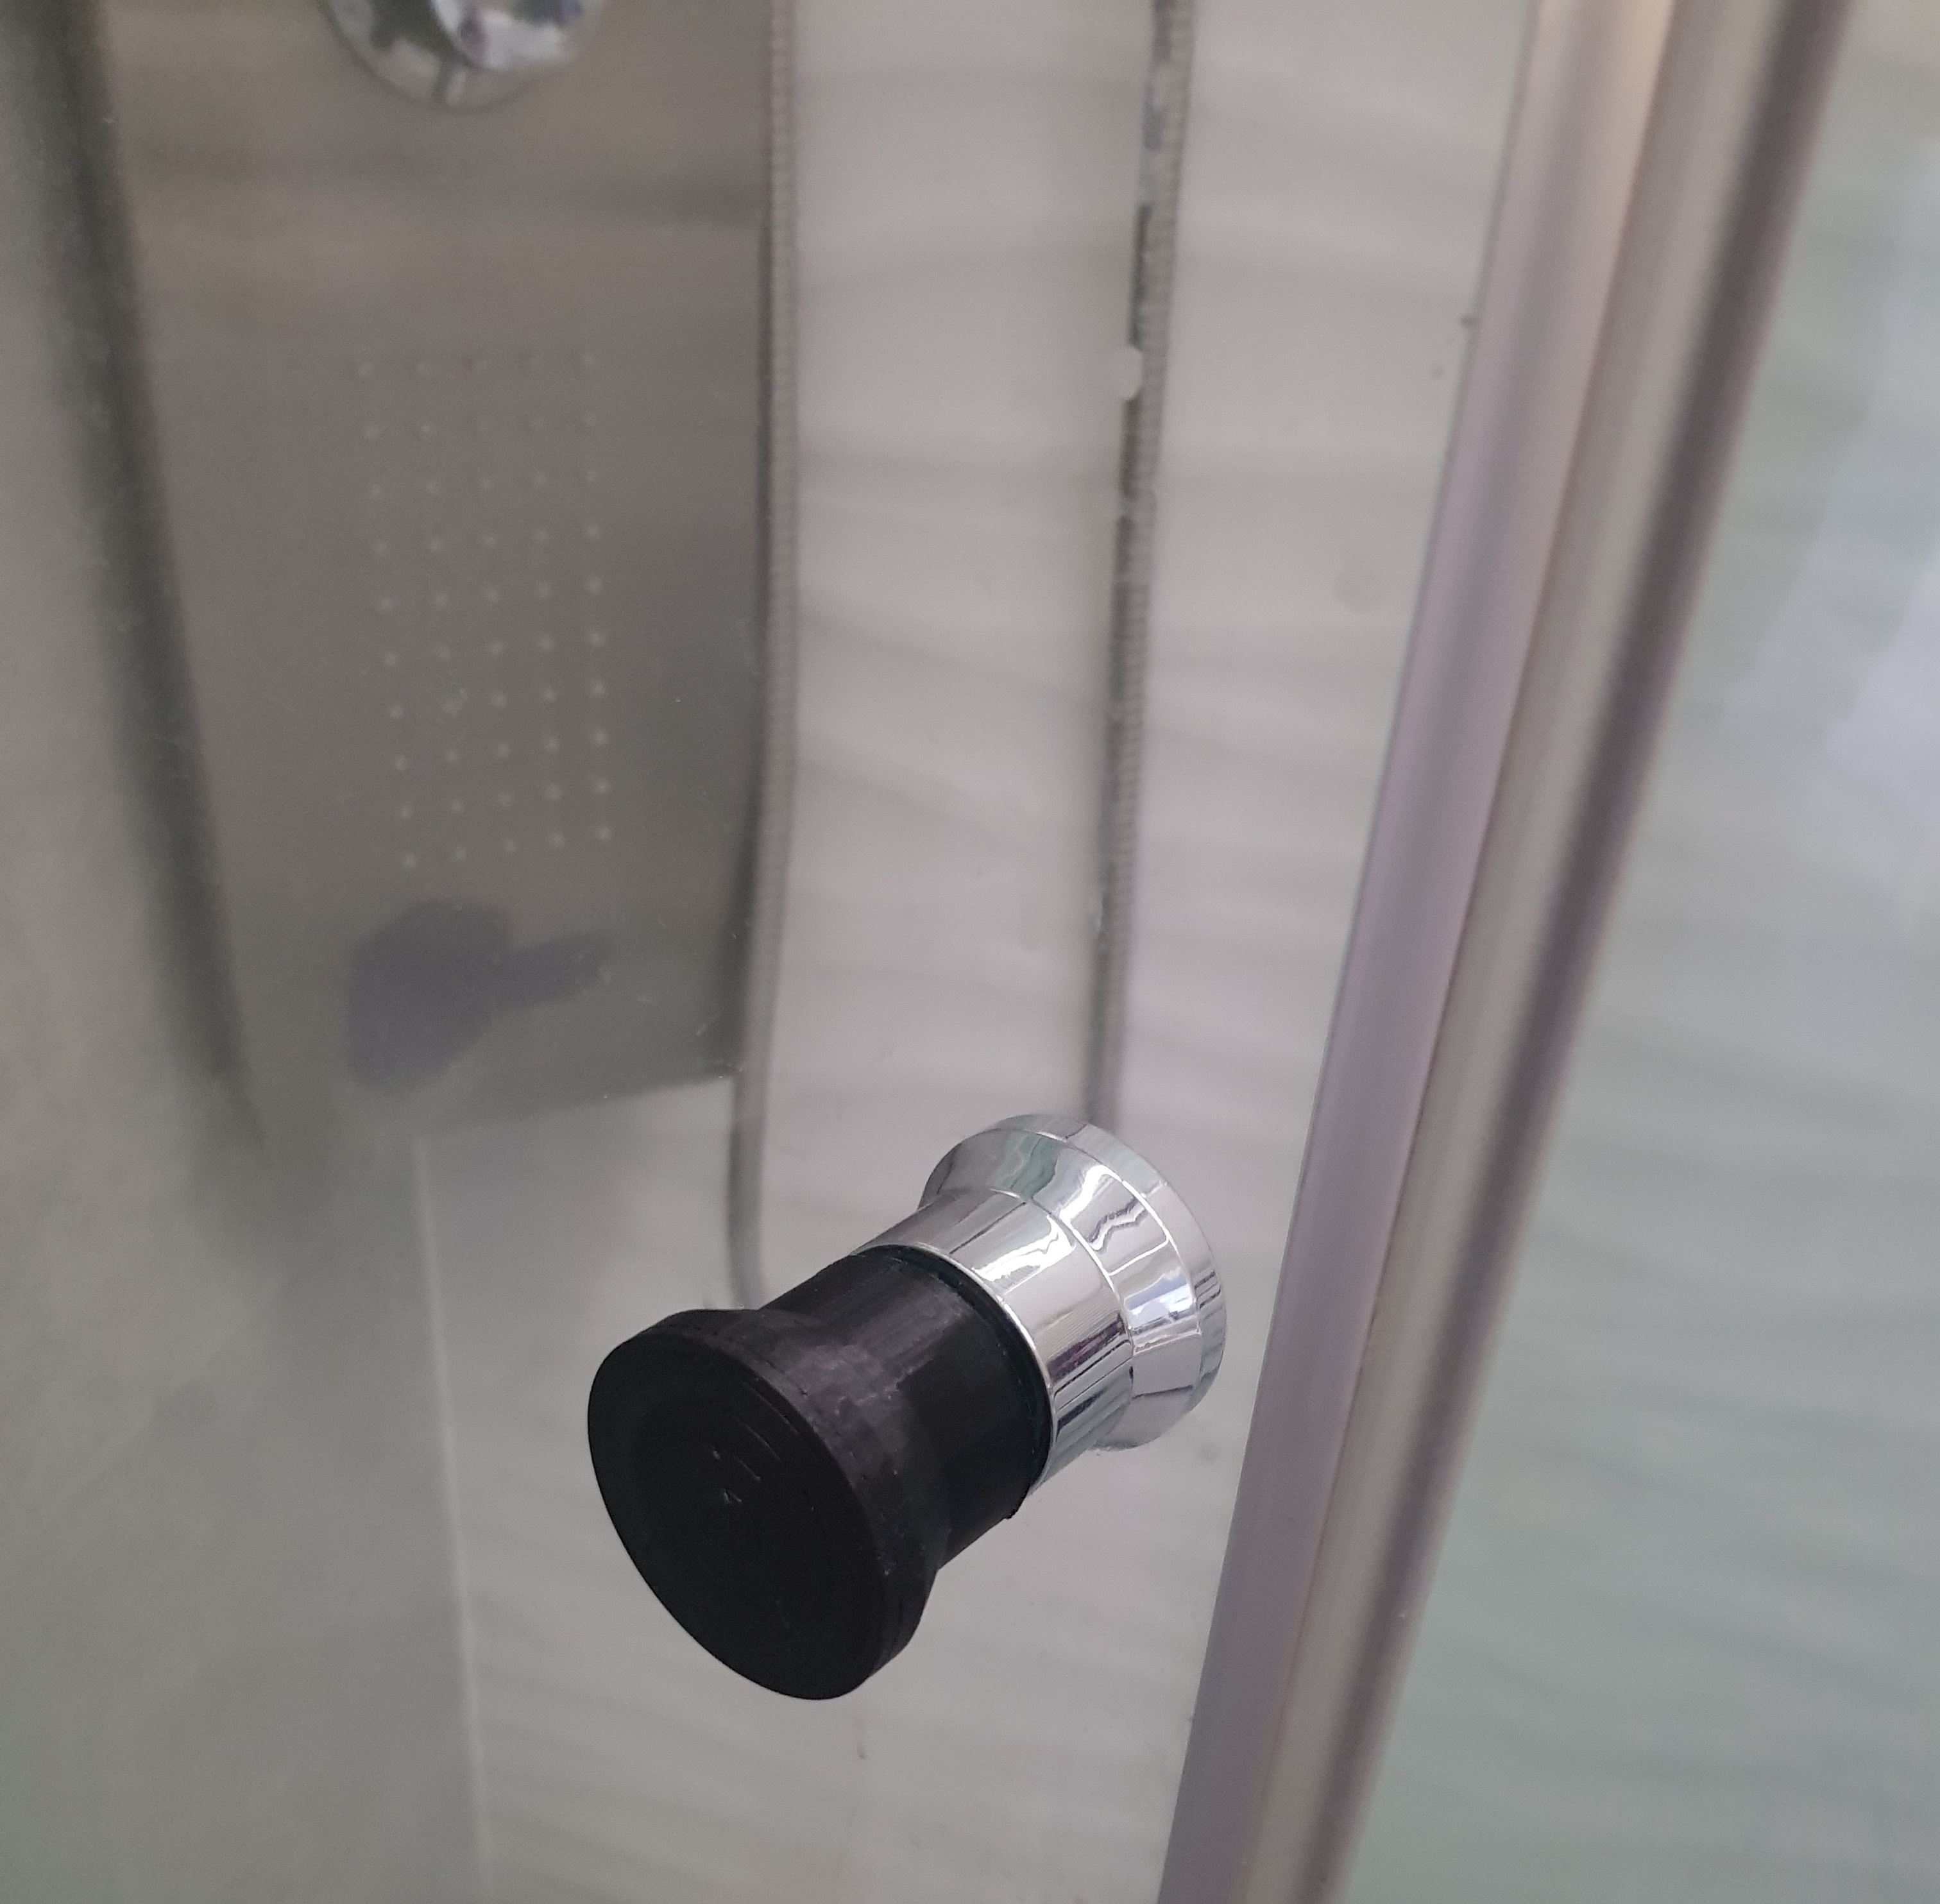 Shower door replacement knob